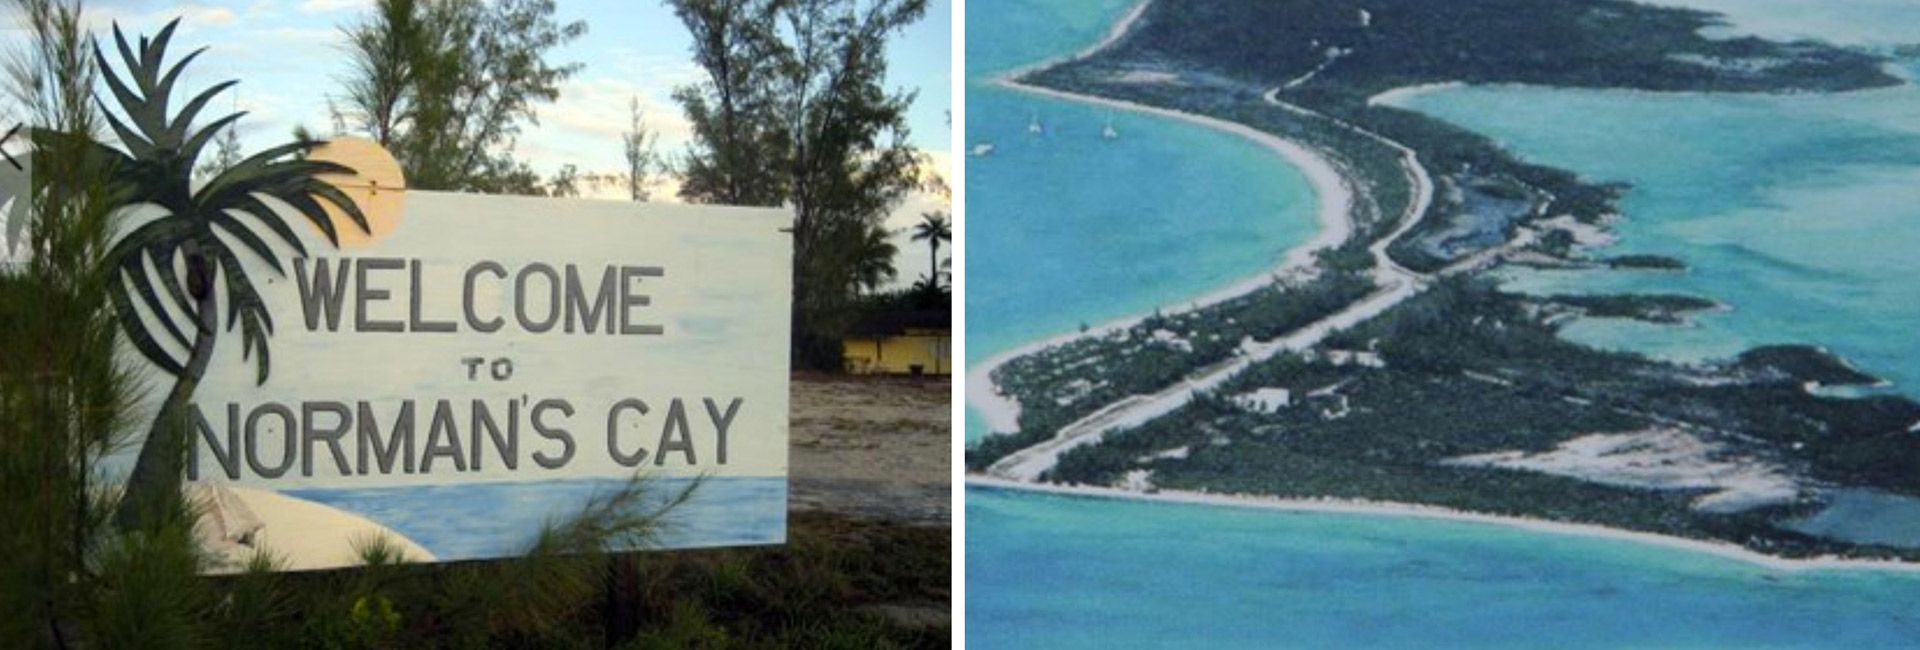 Carlos Lehder, socio de Escobar, compróuna isla en las Bahamas para tener una pista clandestina para sus envíos de droga a Miami.